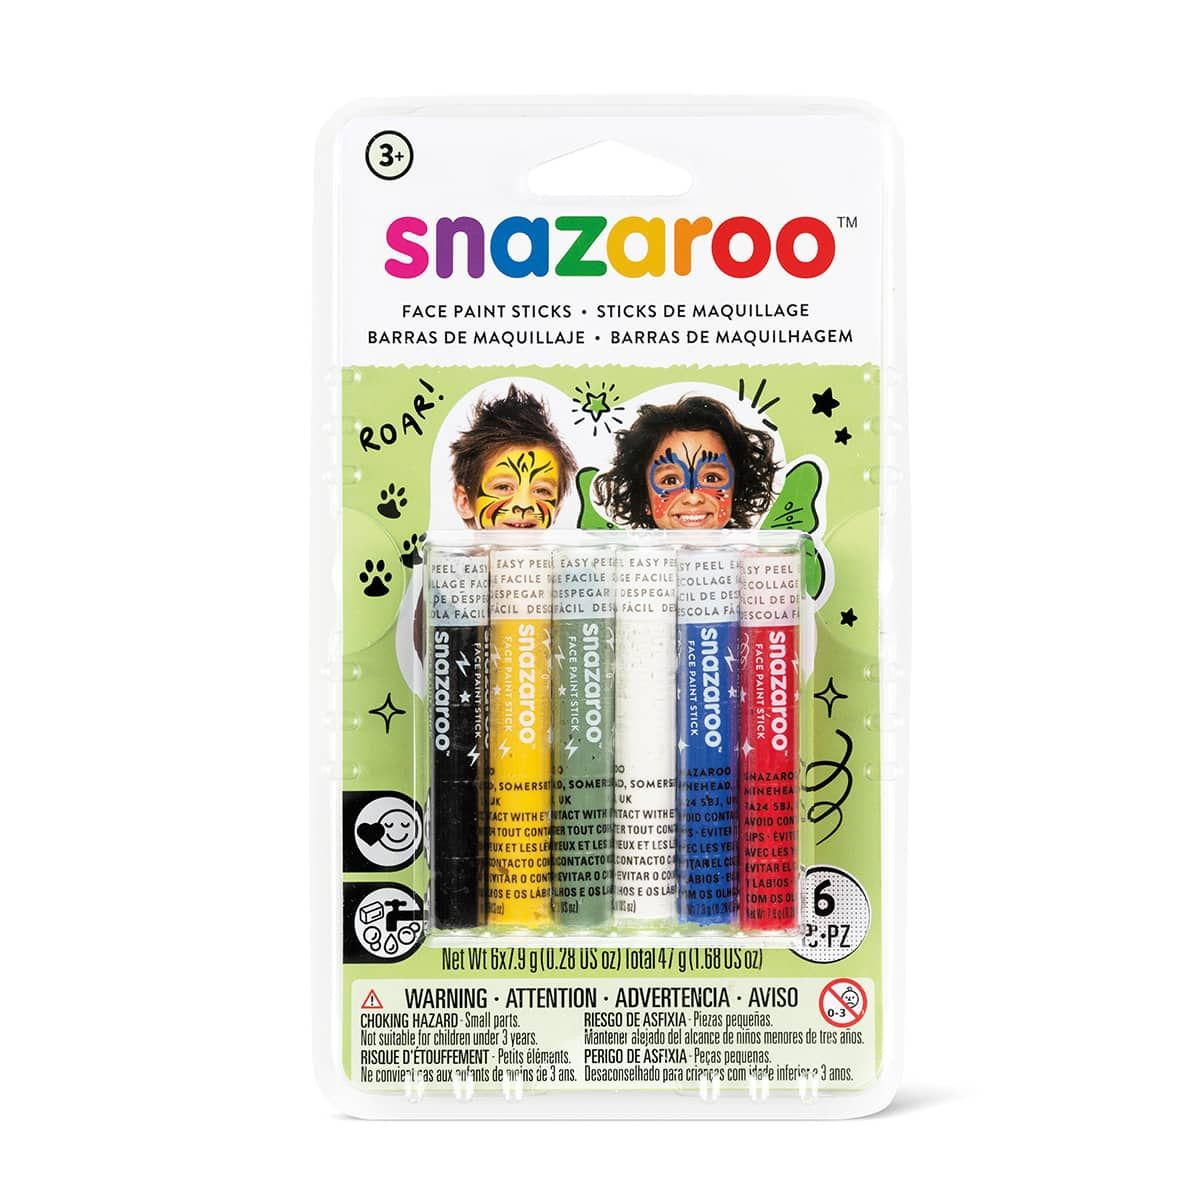 Snazaroo Face Paints